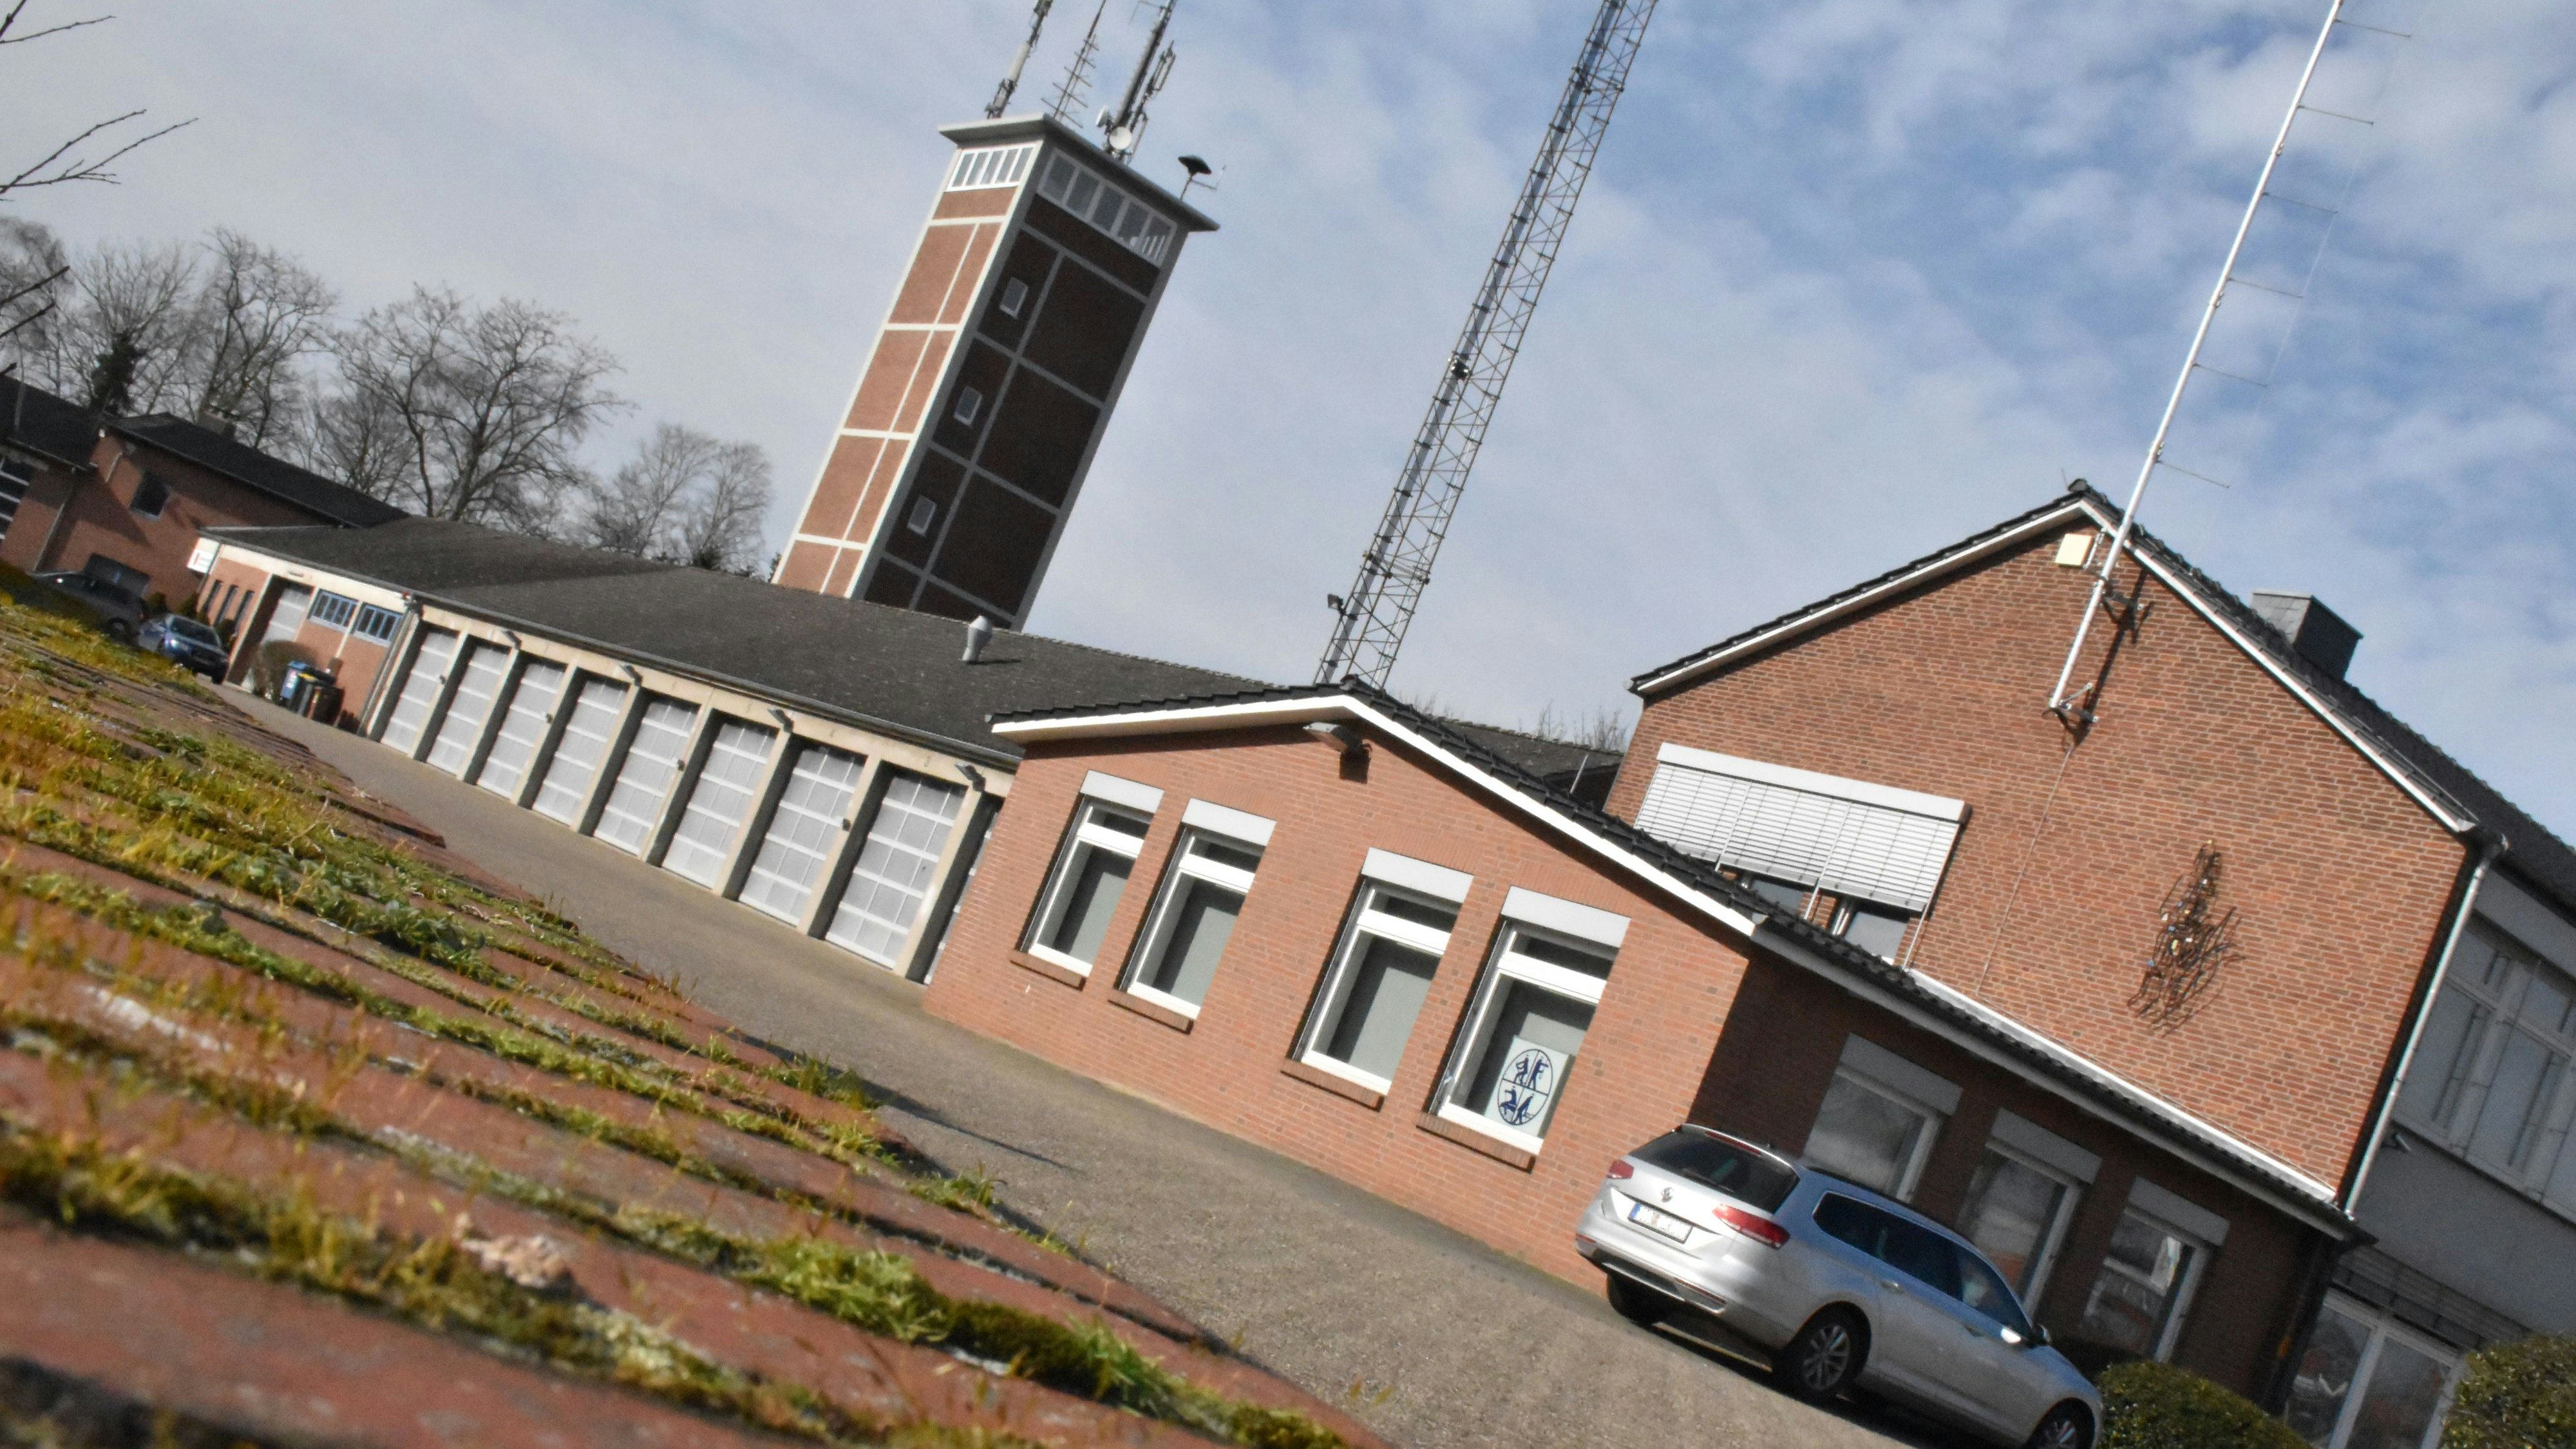 Die bisherige Feuerwehrtechnische Zentrale (FTZ) an der Oldenburger Straße in Vechta. Im Turm trocknen die Schläuche nach einem Einsatz. In dem zweitgeschossigen Gebäude rechts sitzt bisher die Leitstelle. Foto: Ebert